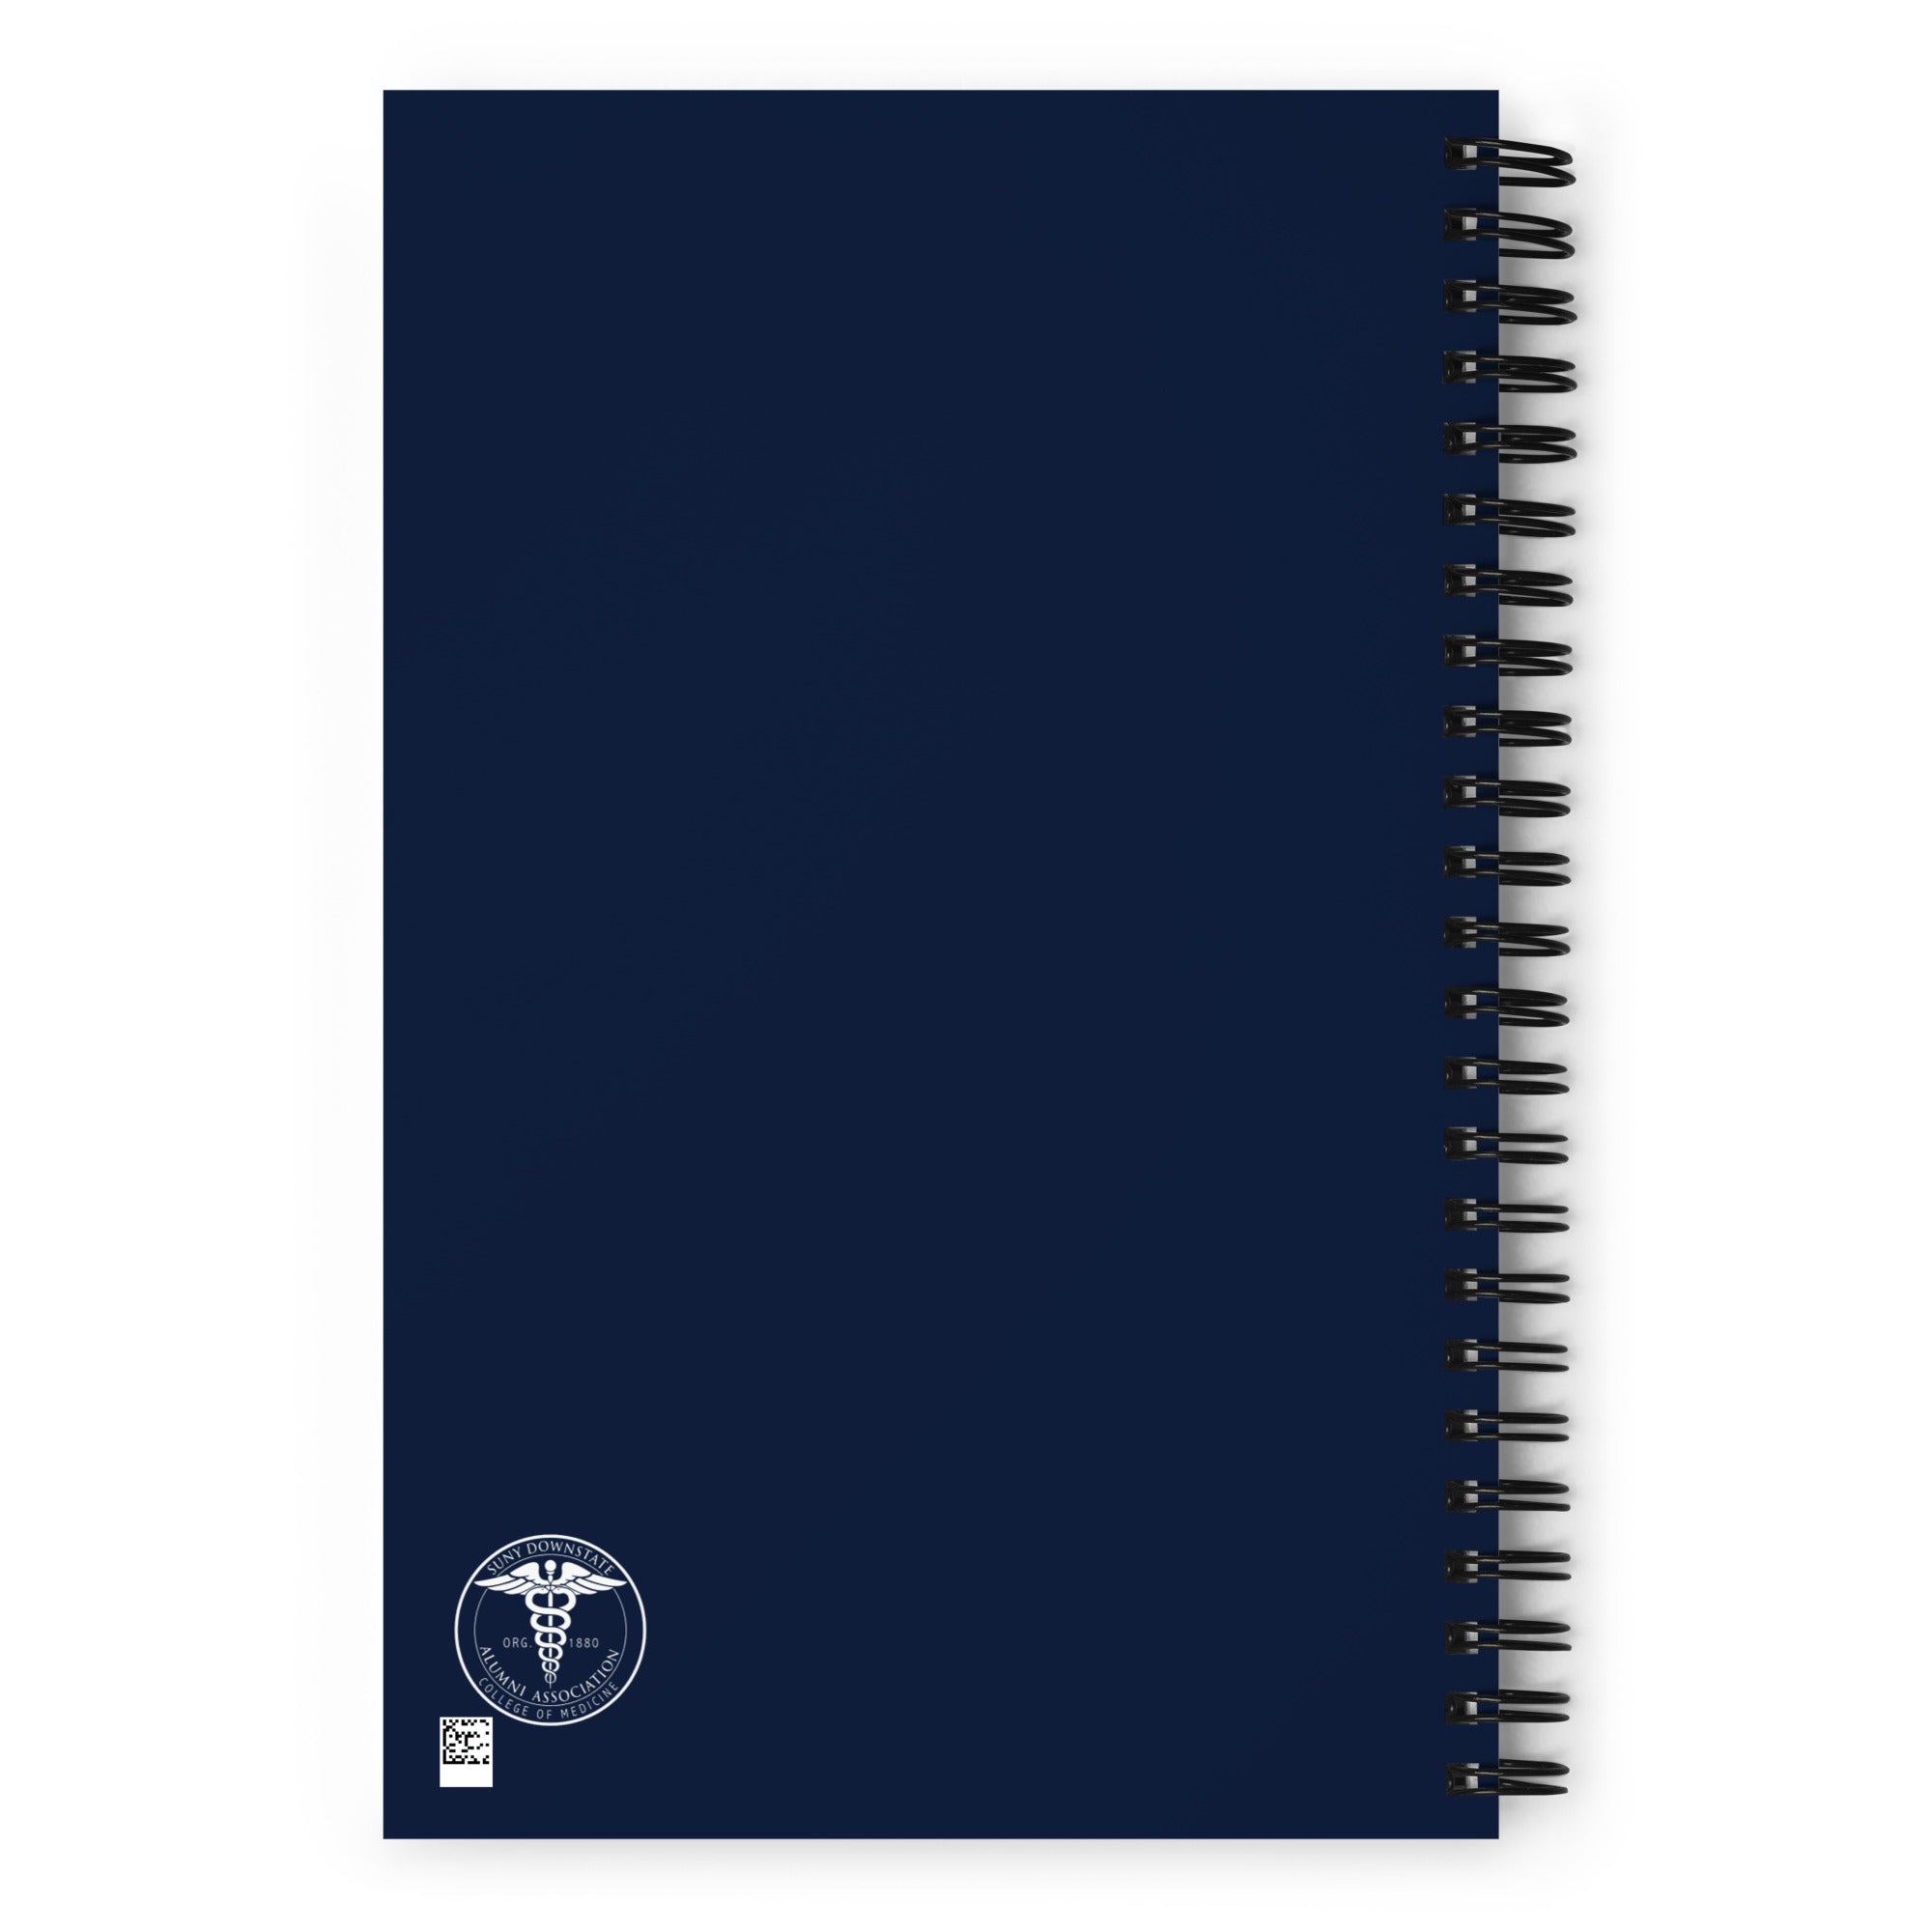 AACMSD Spiral notebook